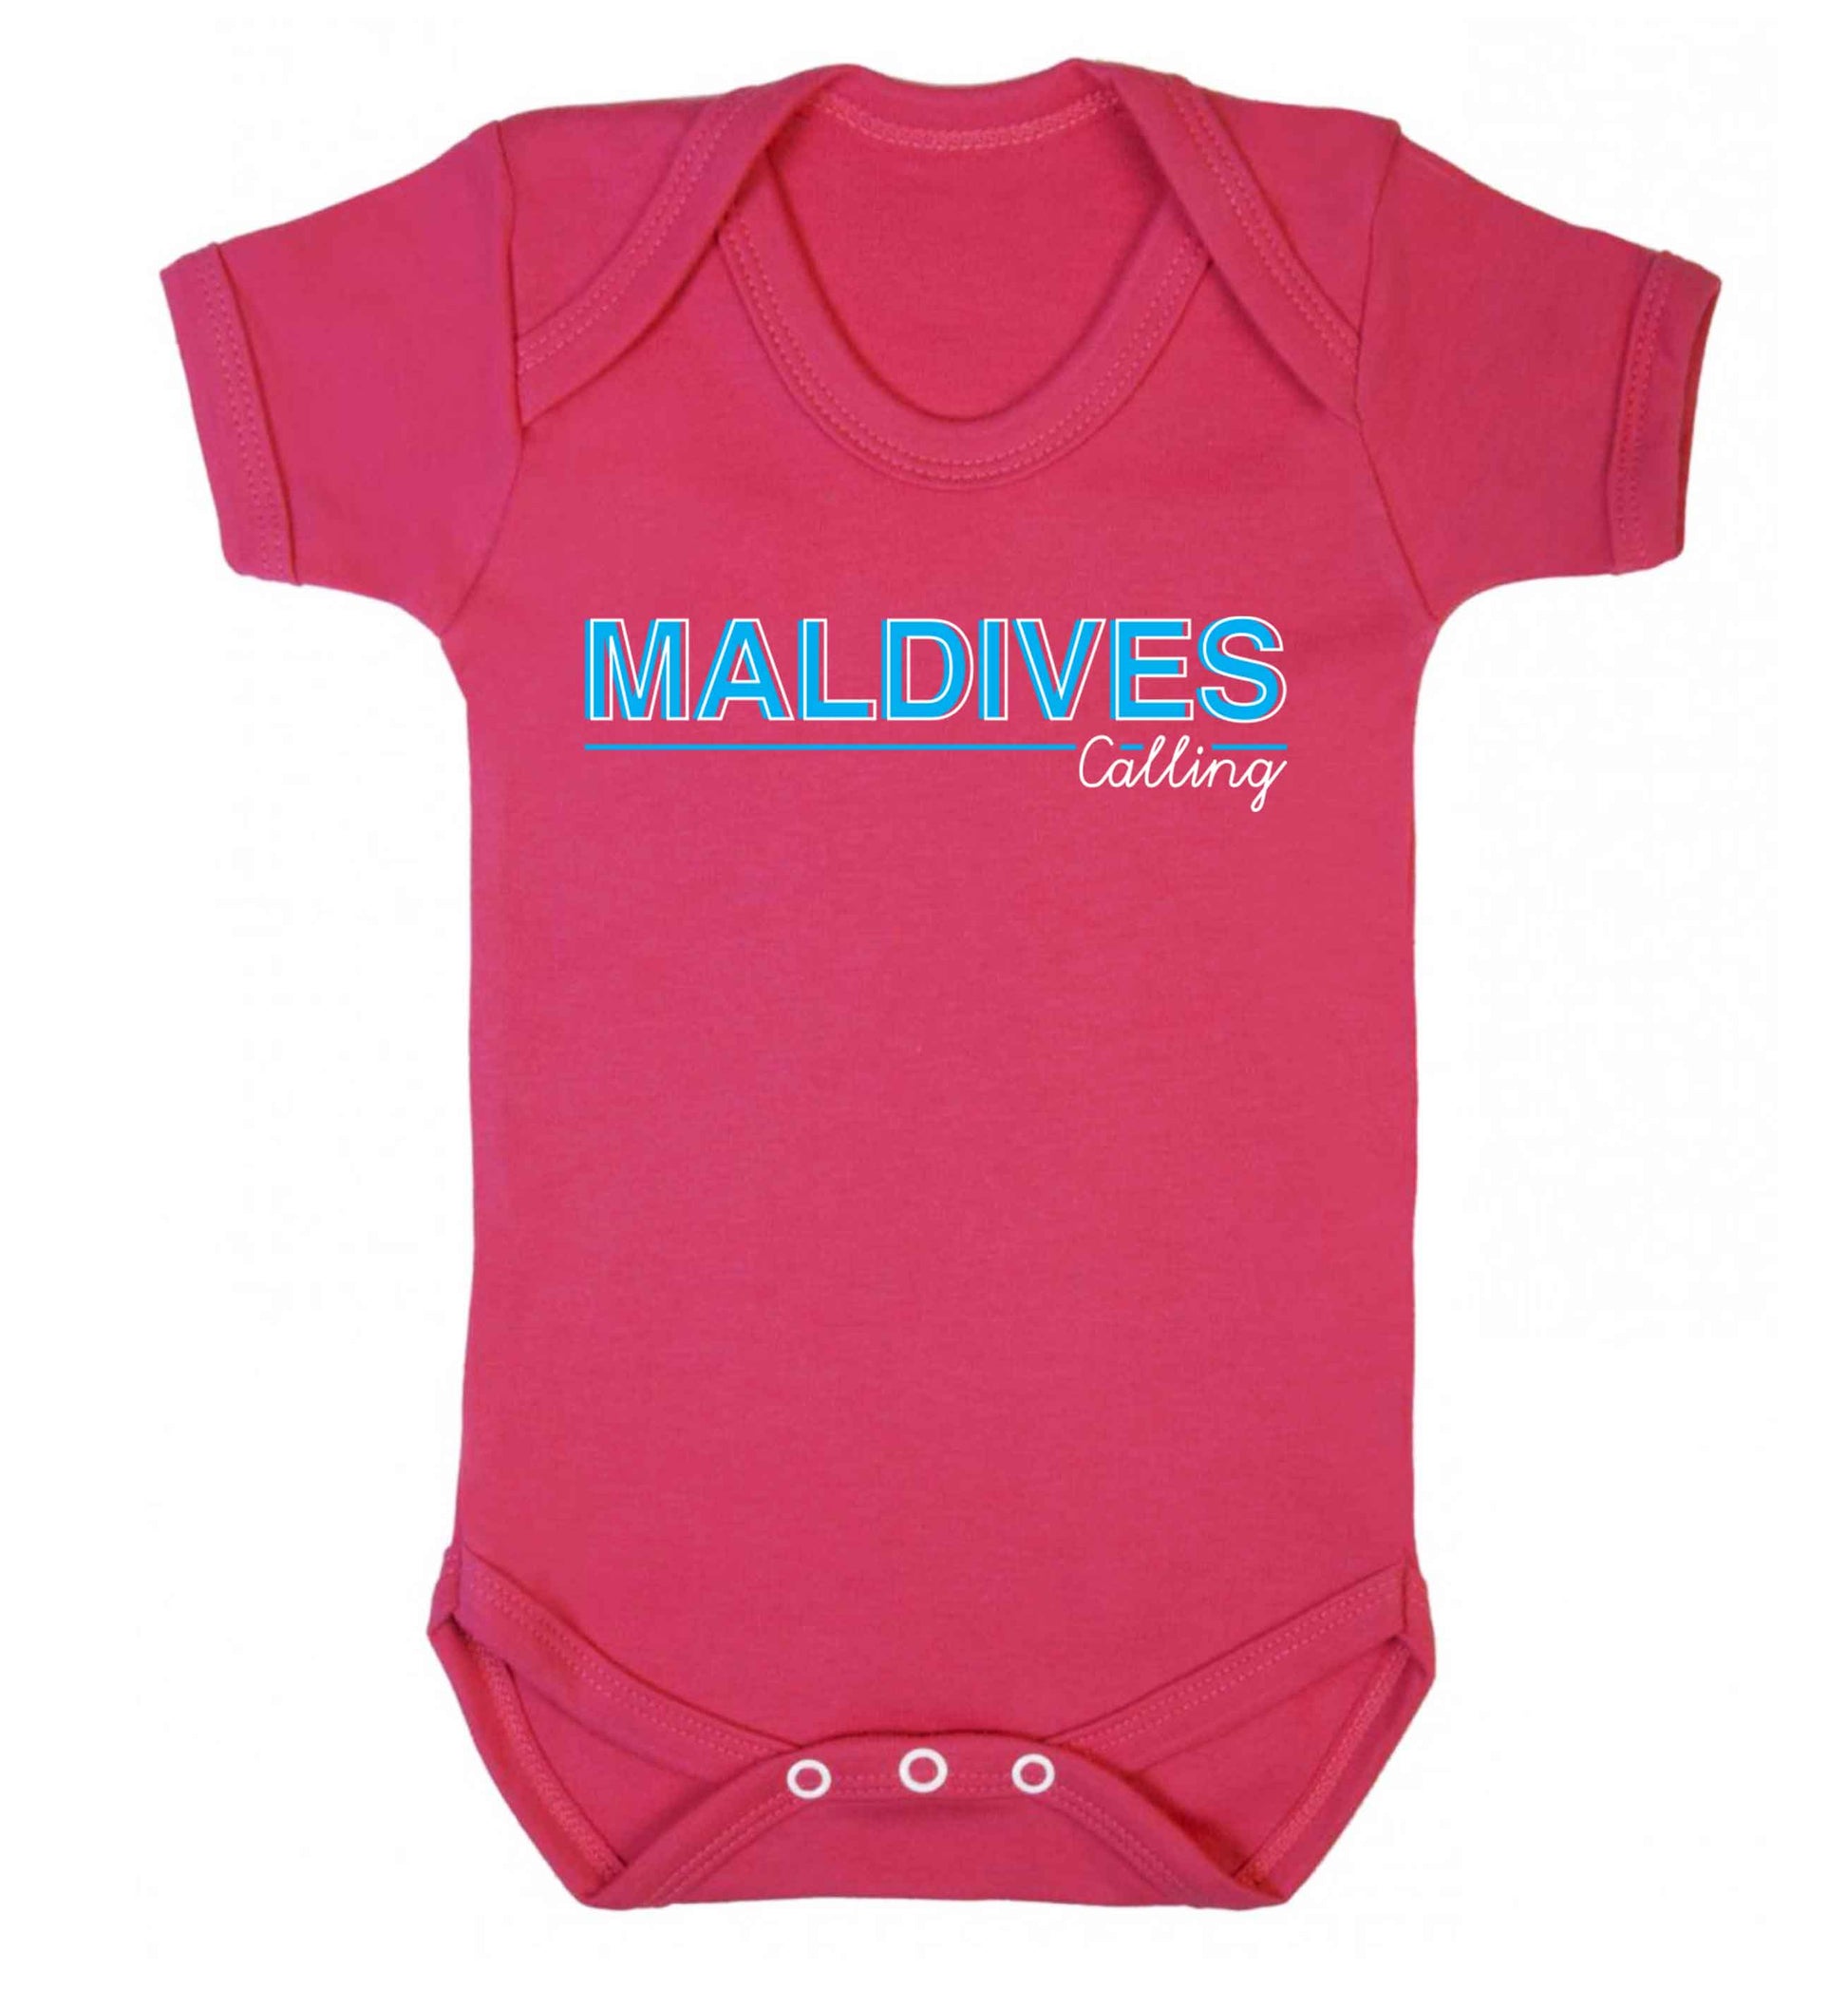 Maldives calling Baby Vest dark pink 18-24 months